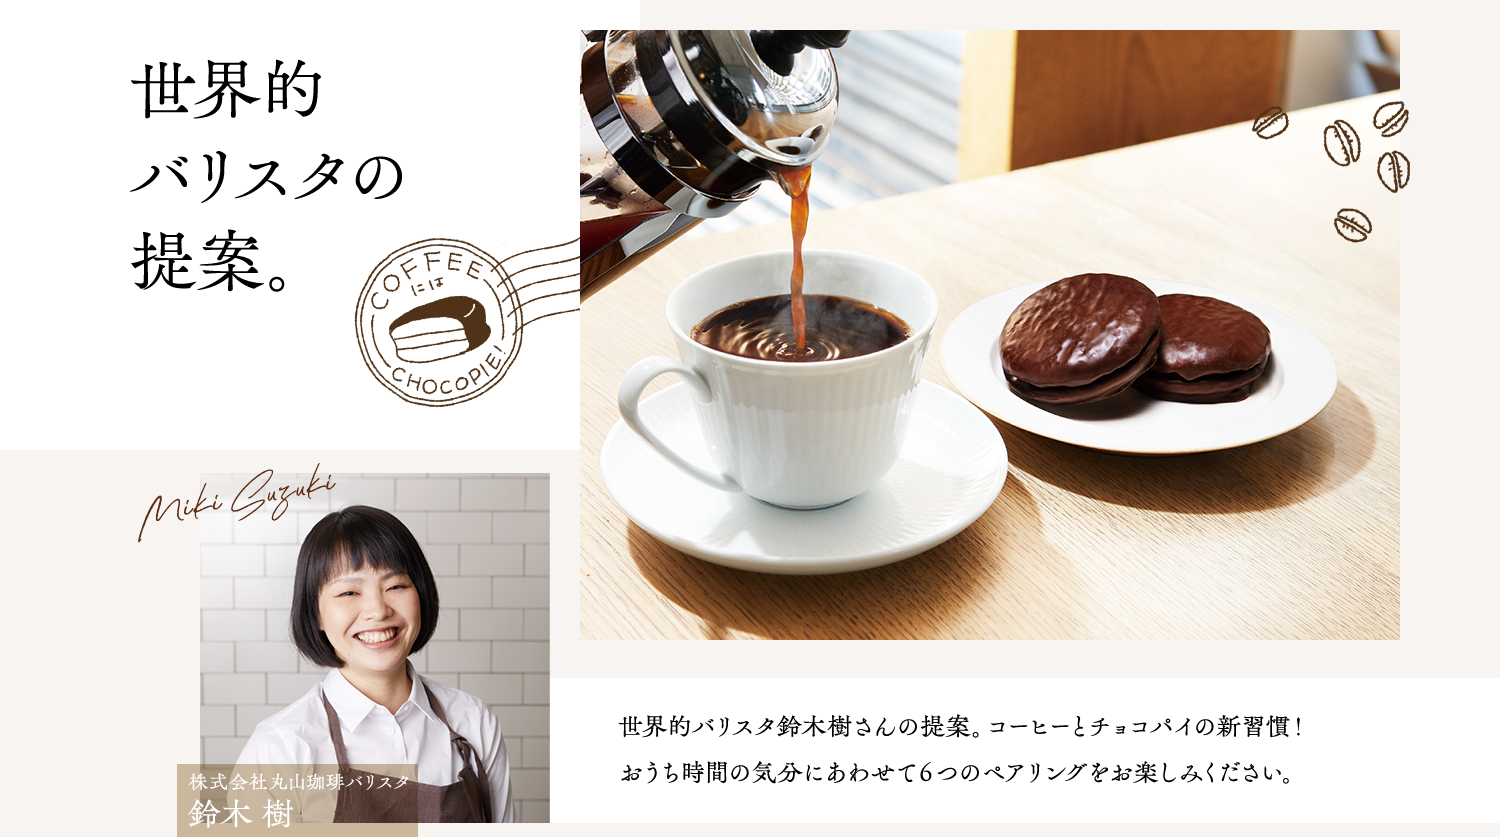 世界的バリスタの提案。世界的バリスタ鈴木樹さんの提案。コーヒーとチョコパイの新習慣！おうち時間の気分にあわせて６つのペアリングをお楽しみください。